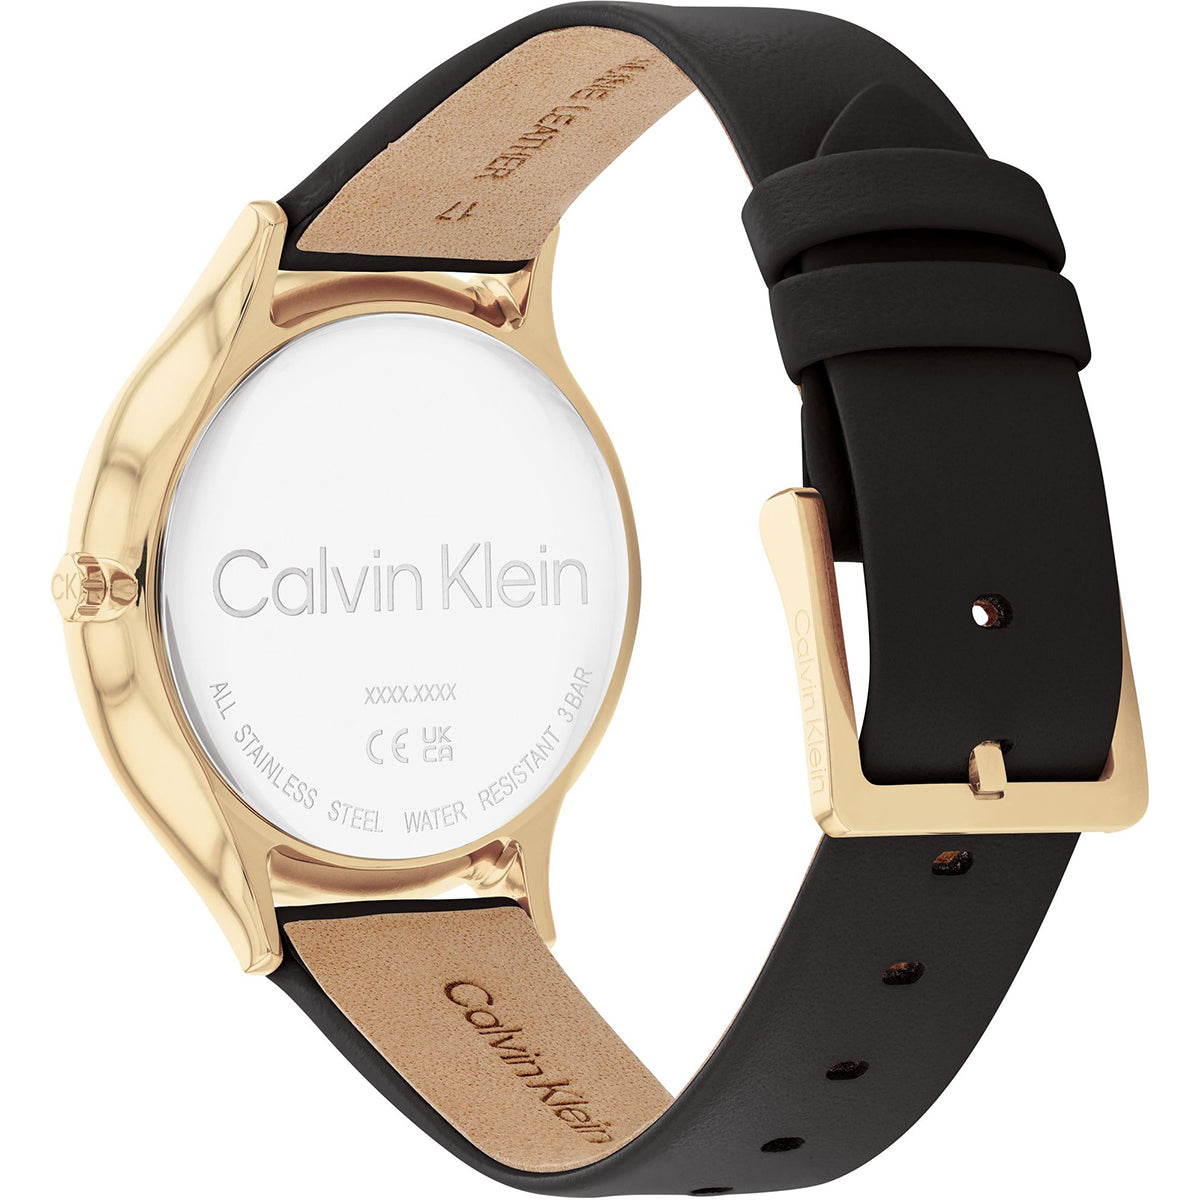 Calvin Klein - Timeless - 25200008